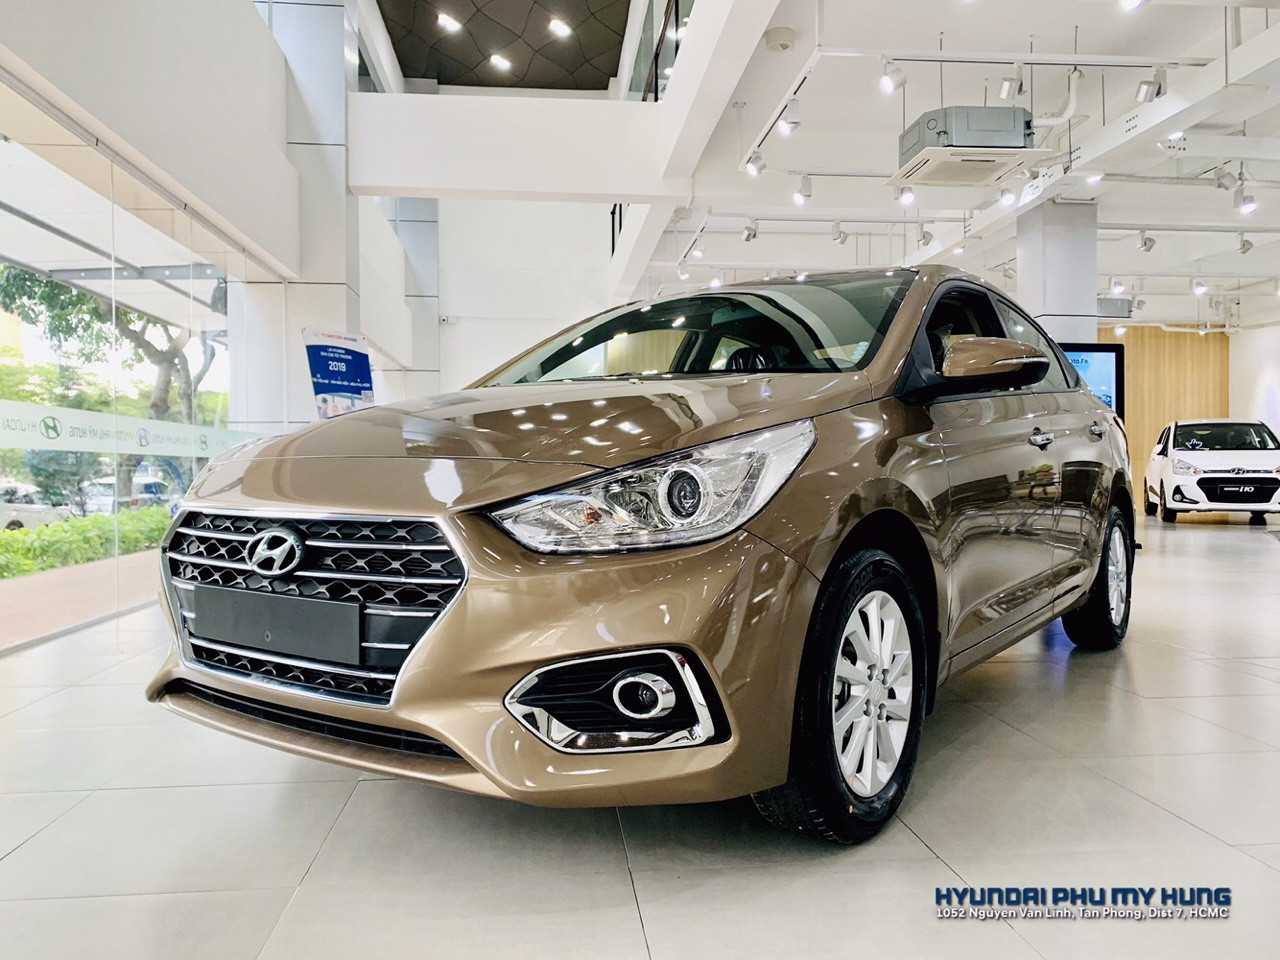 Hyundai Accent 2019 MT 1.4 Vàng Cát Ảnh Chụp Thực Tế Tại Hyundai Quận 7